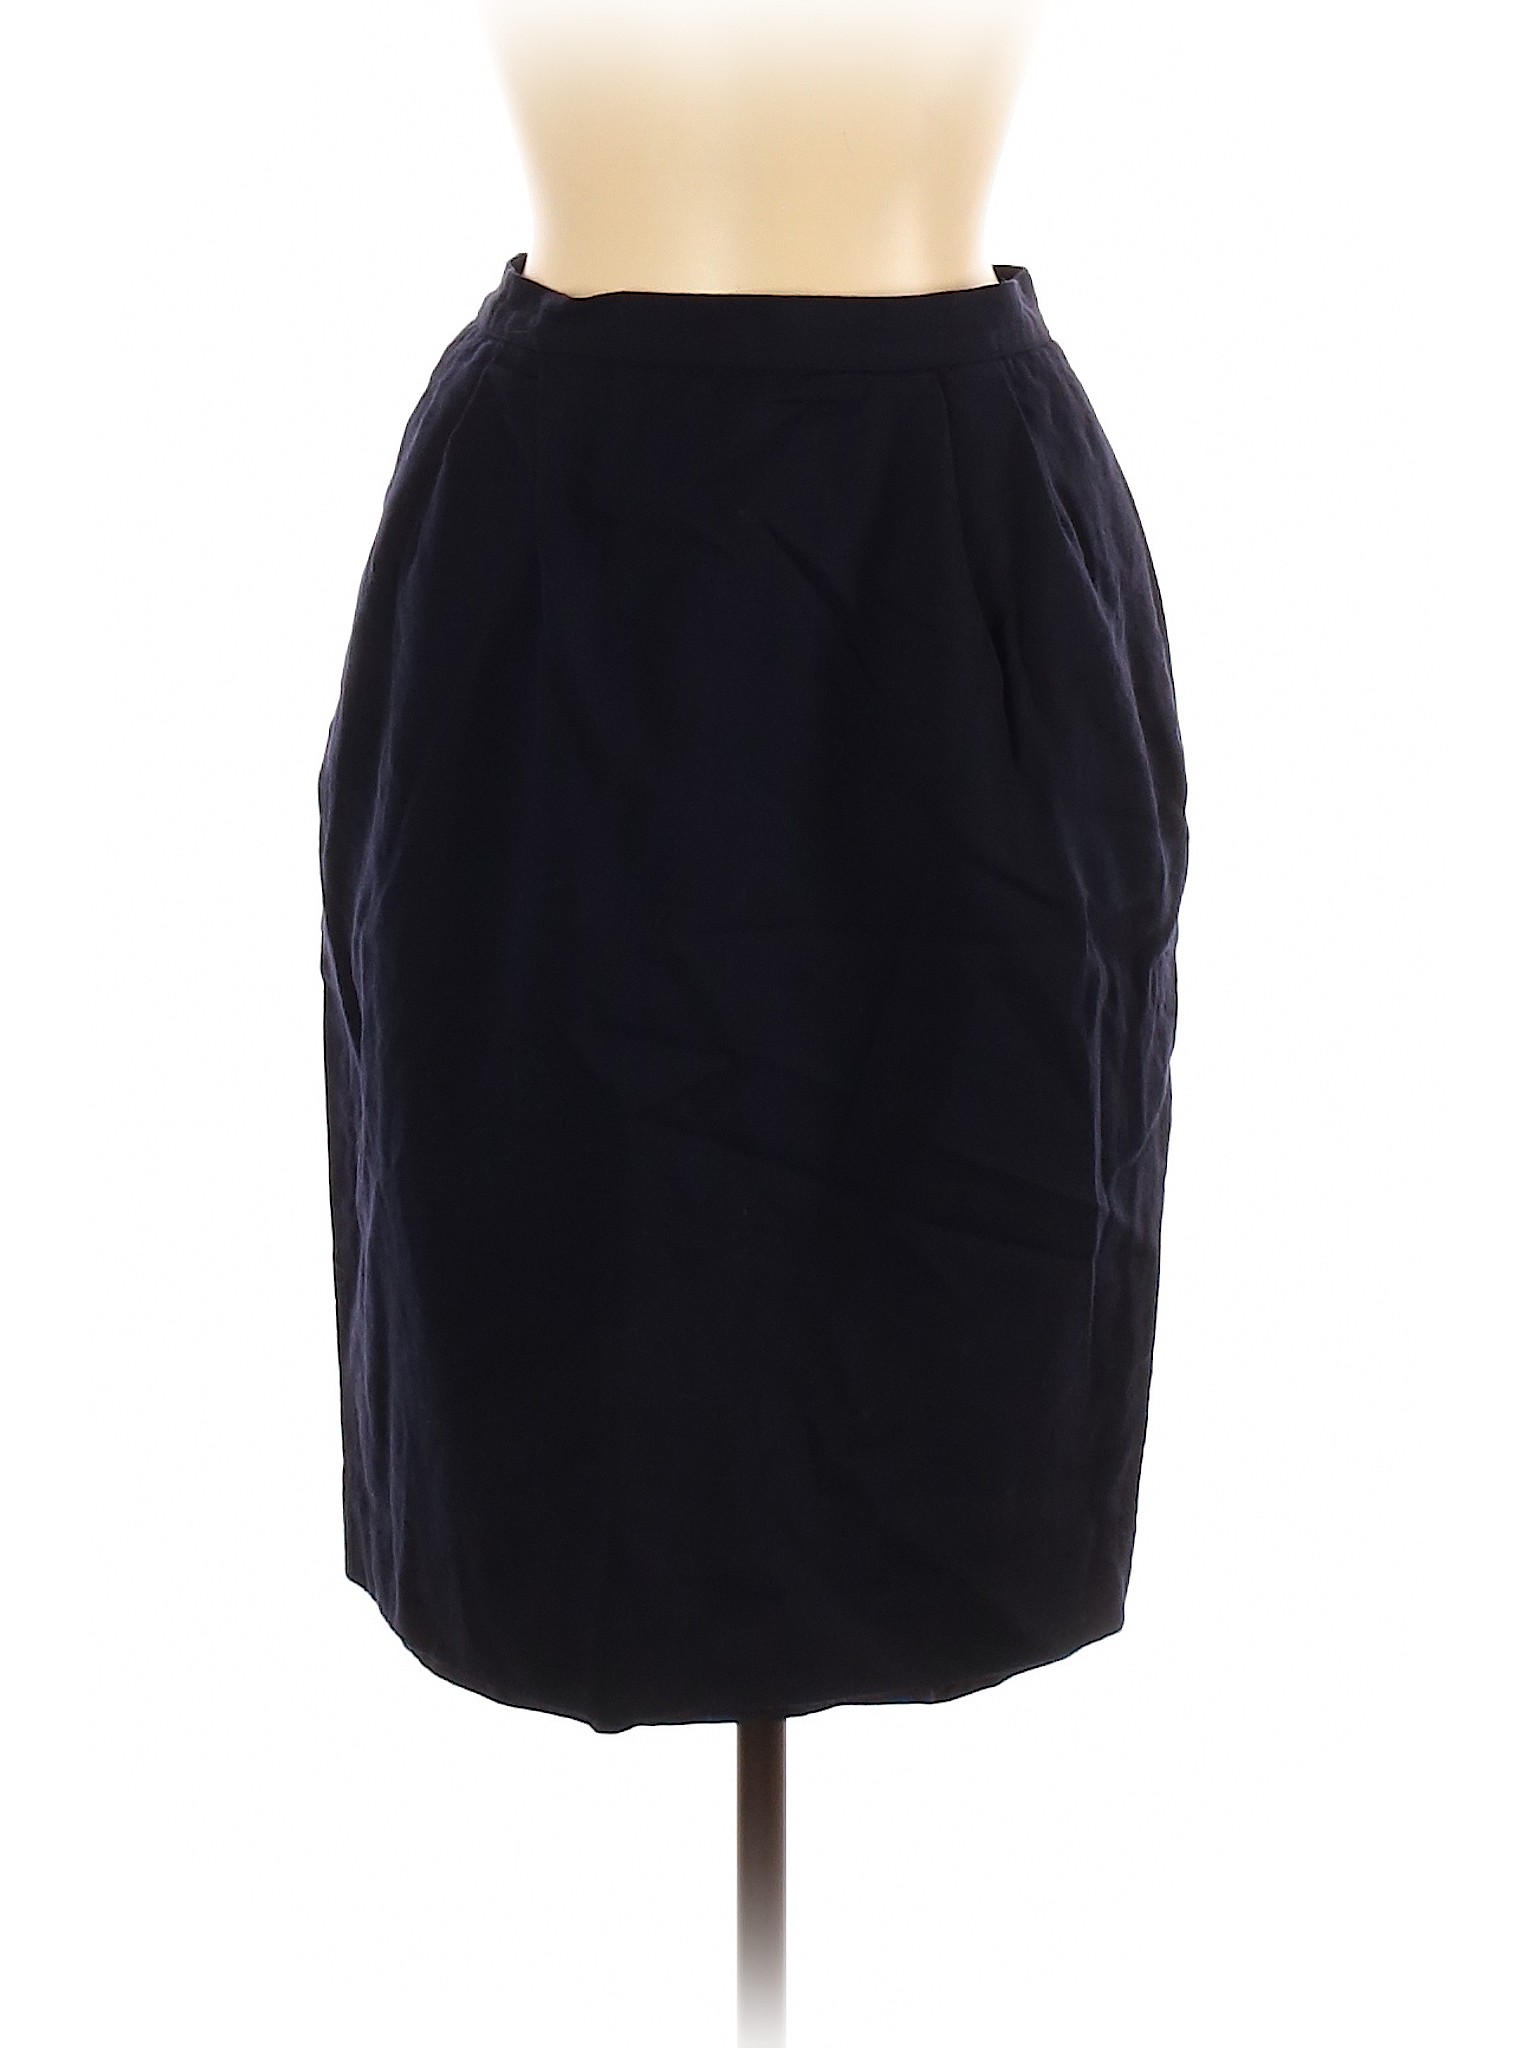 Liz Claiborne Collection Women Blue Wool Skirt 8 | eBay